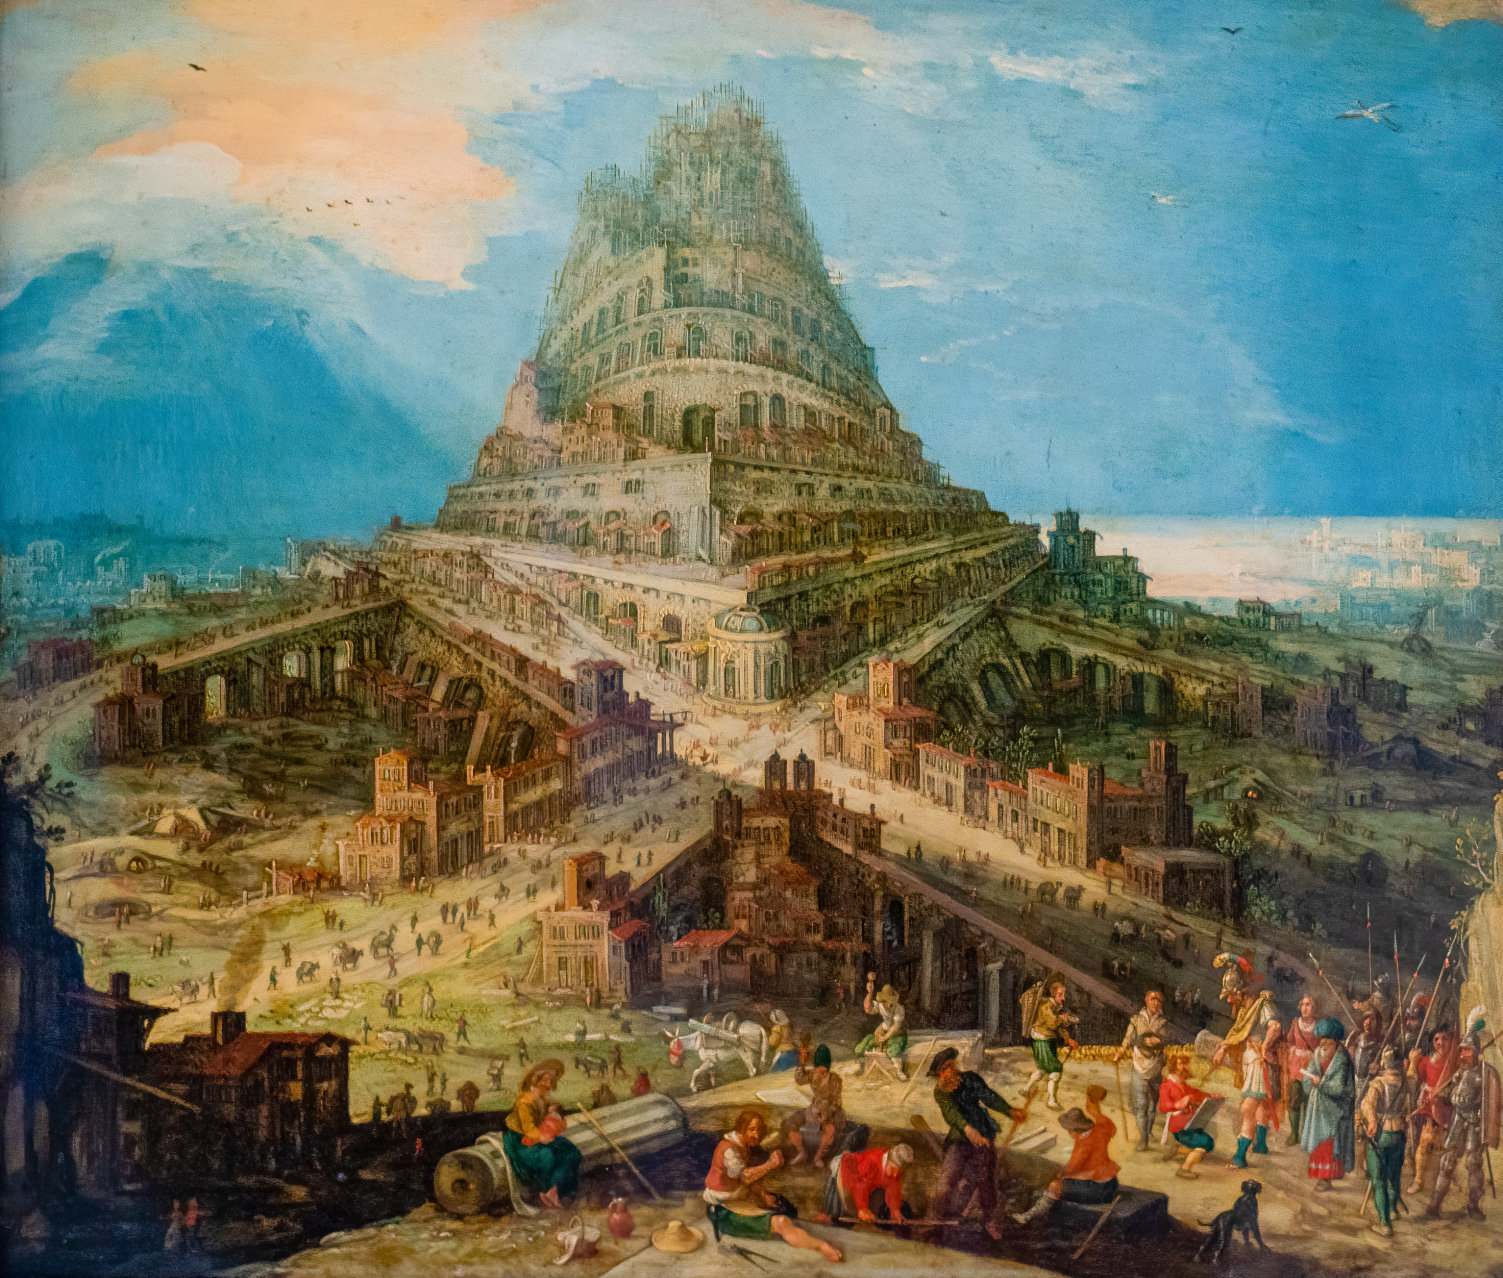 Découverte de la première preuve de la tour biblique de Babel 2